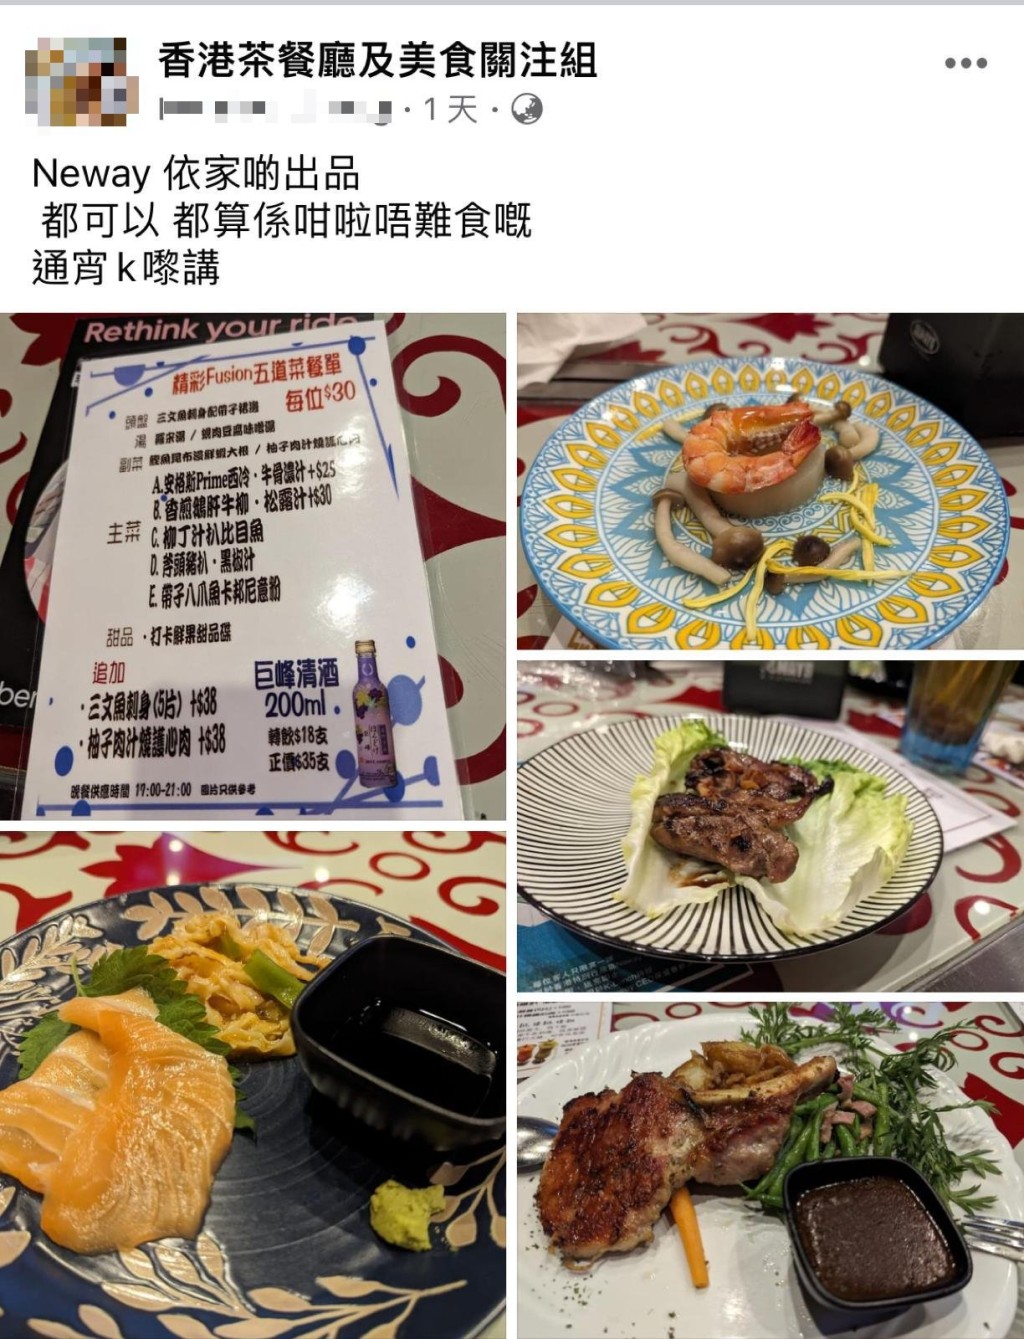 最近有網民在facebook群組「香港茶餐廳及美食關注組」發文，分享最近在Neway唱通宵K「幫襯」了一個$30有道菜的套餐，包括鵝肝牛柳、安格斯西冷及三文魚刺身等美食。（香港茶餐廳及美食關注組@facebook）